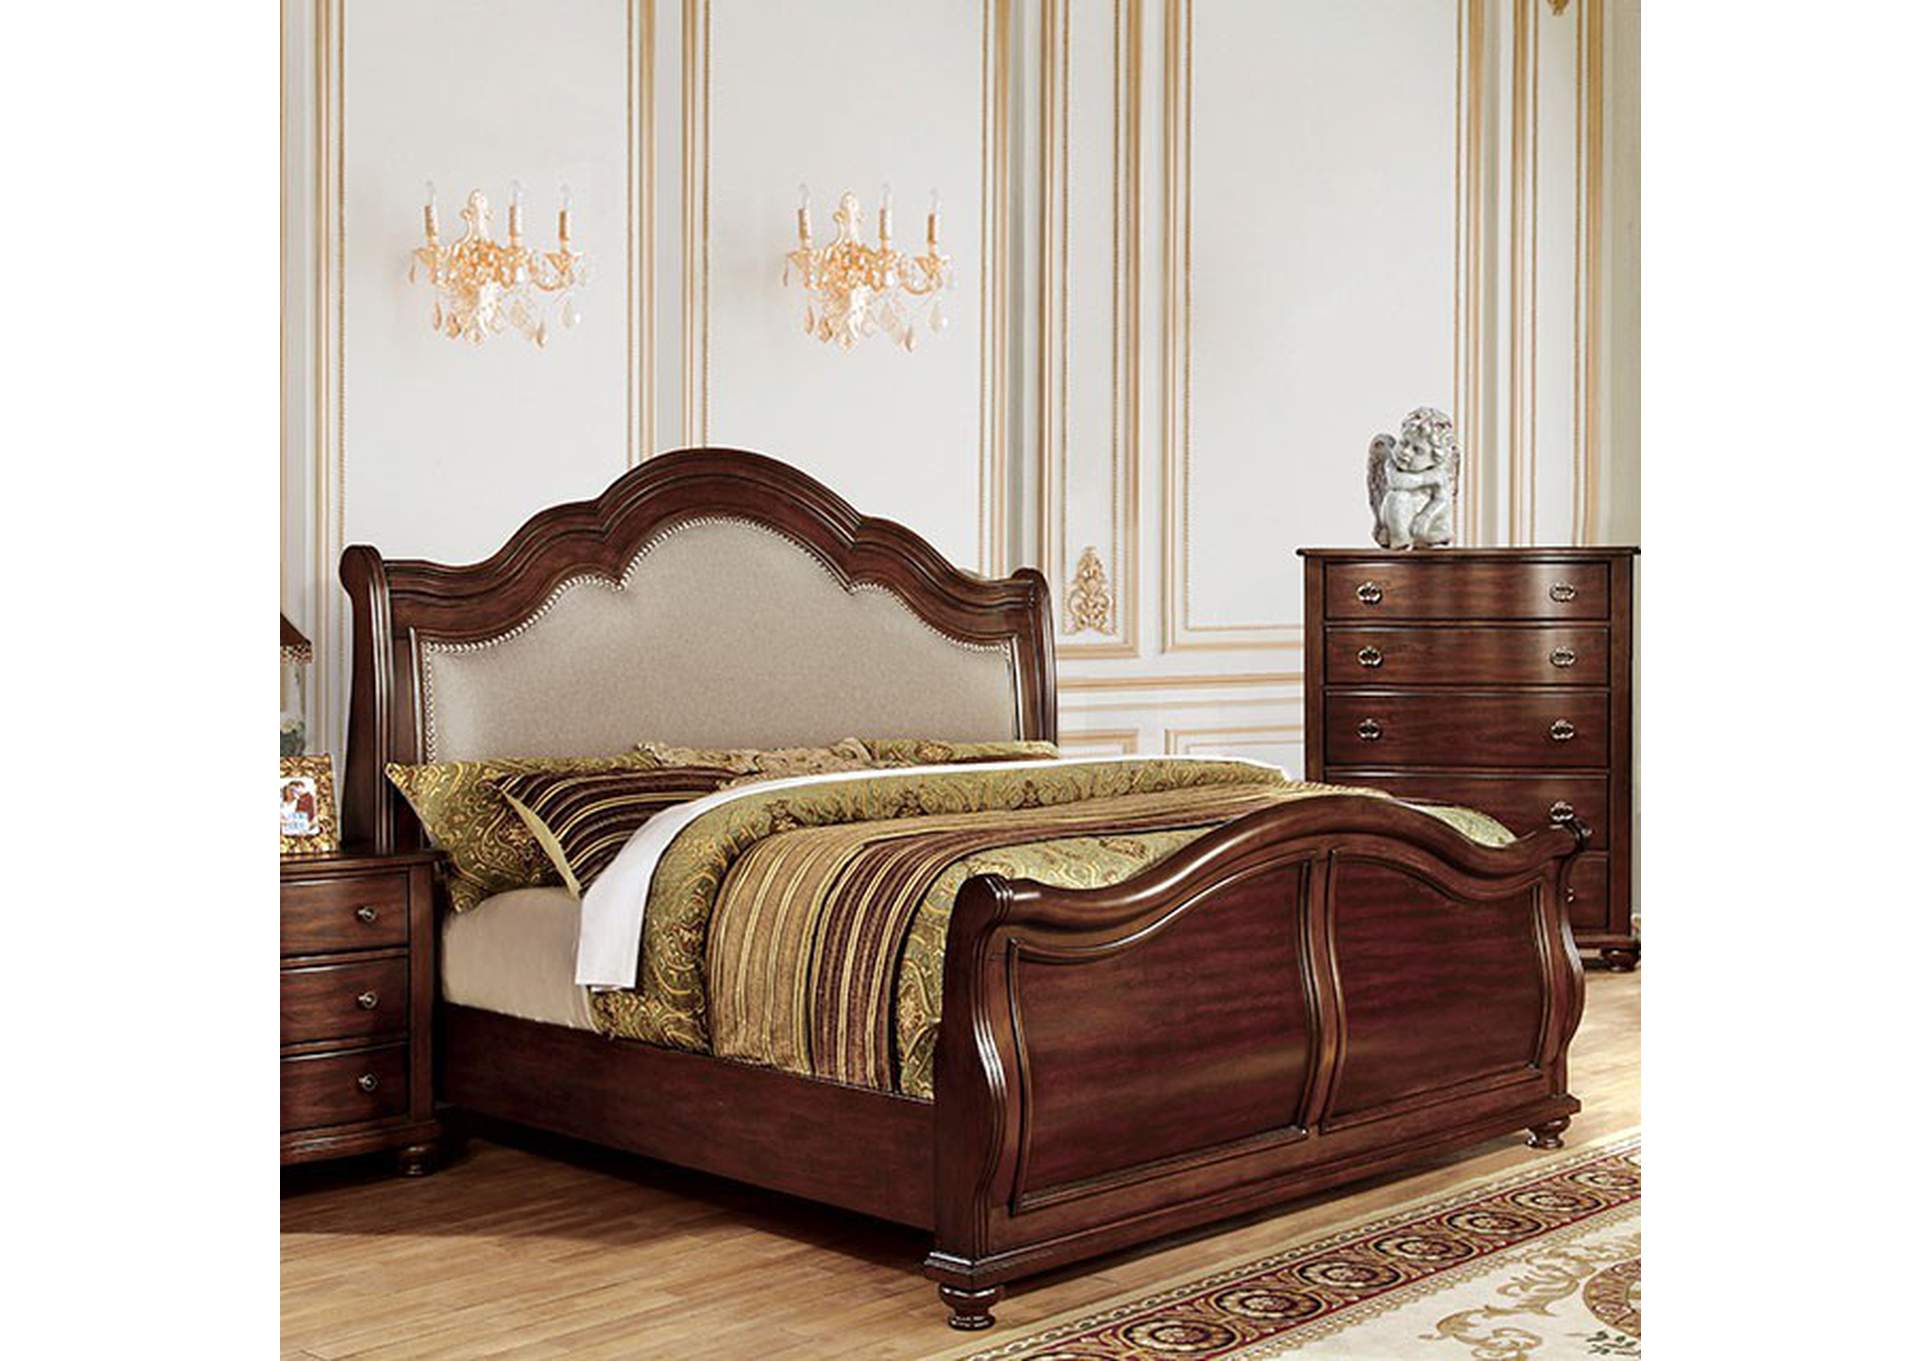 Bellavista Queen Bed,Furniture of America